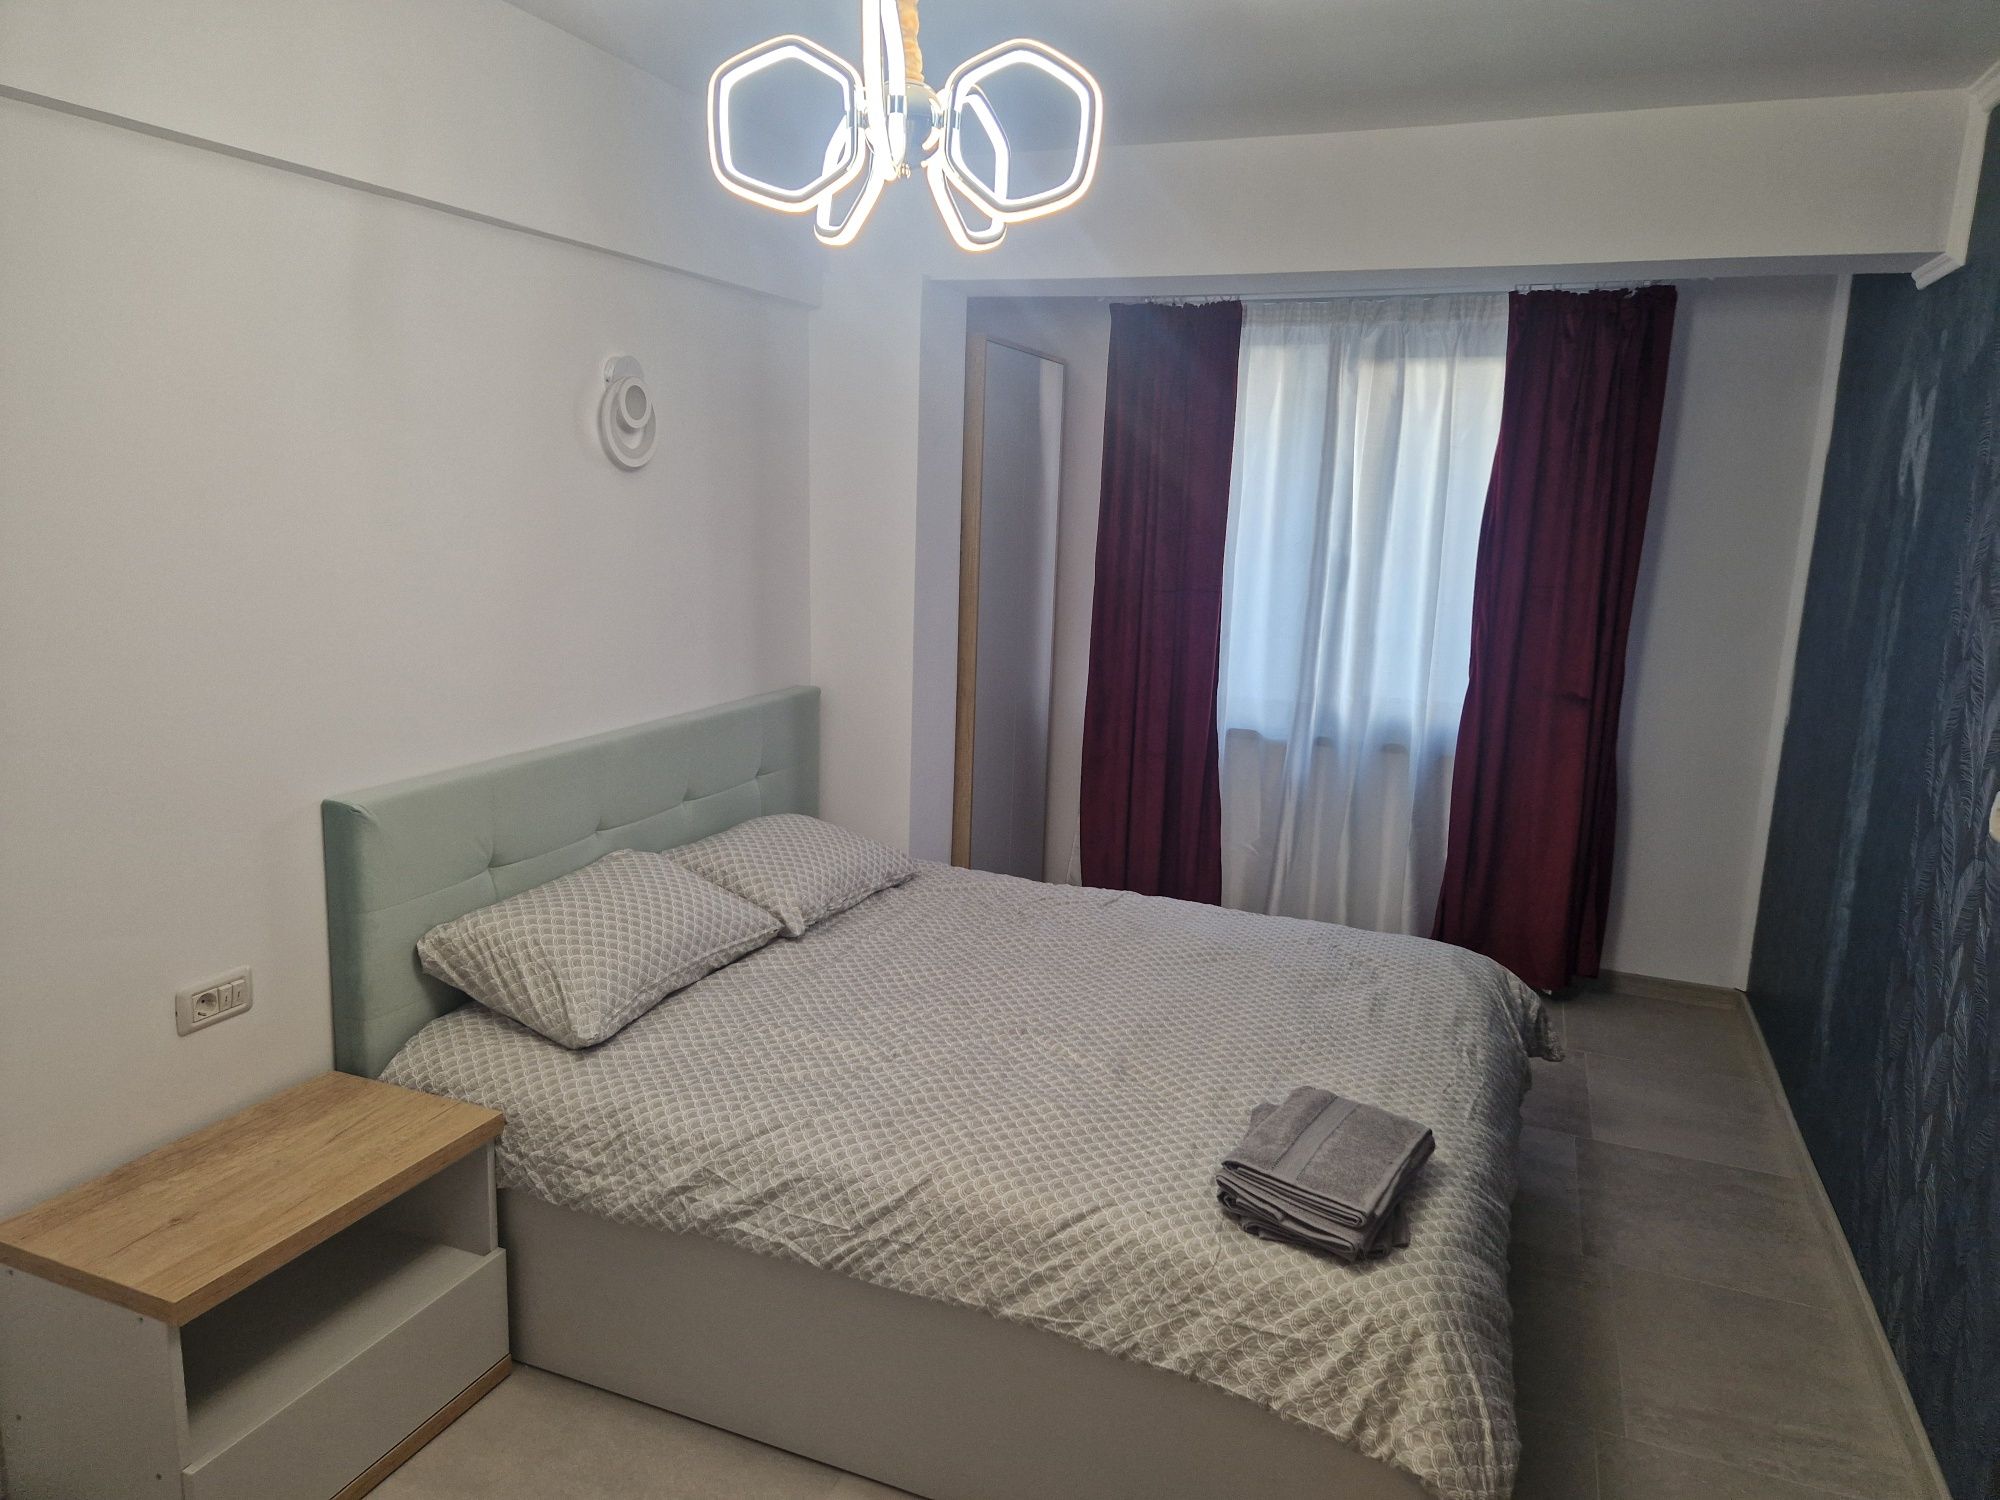 Închiriez apartament nou în regim hotelier lângă Arena Mall Bacău